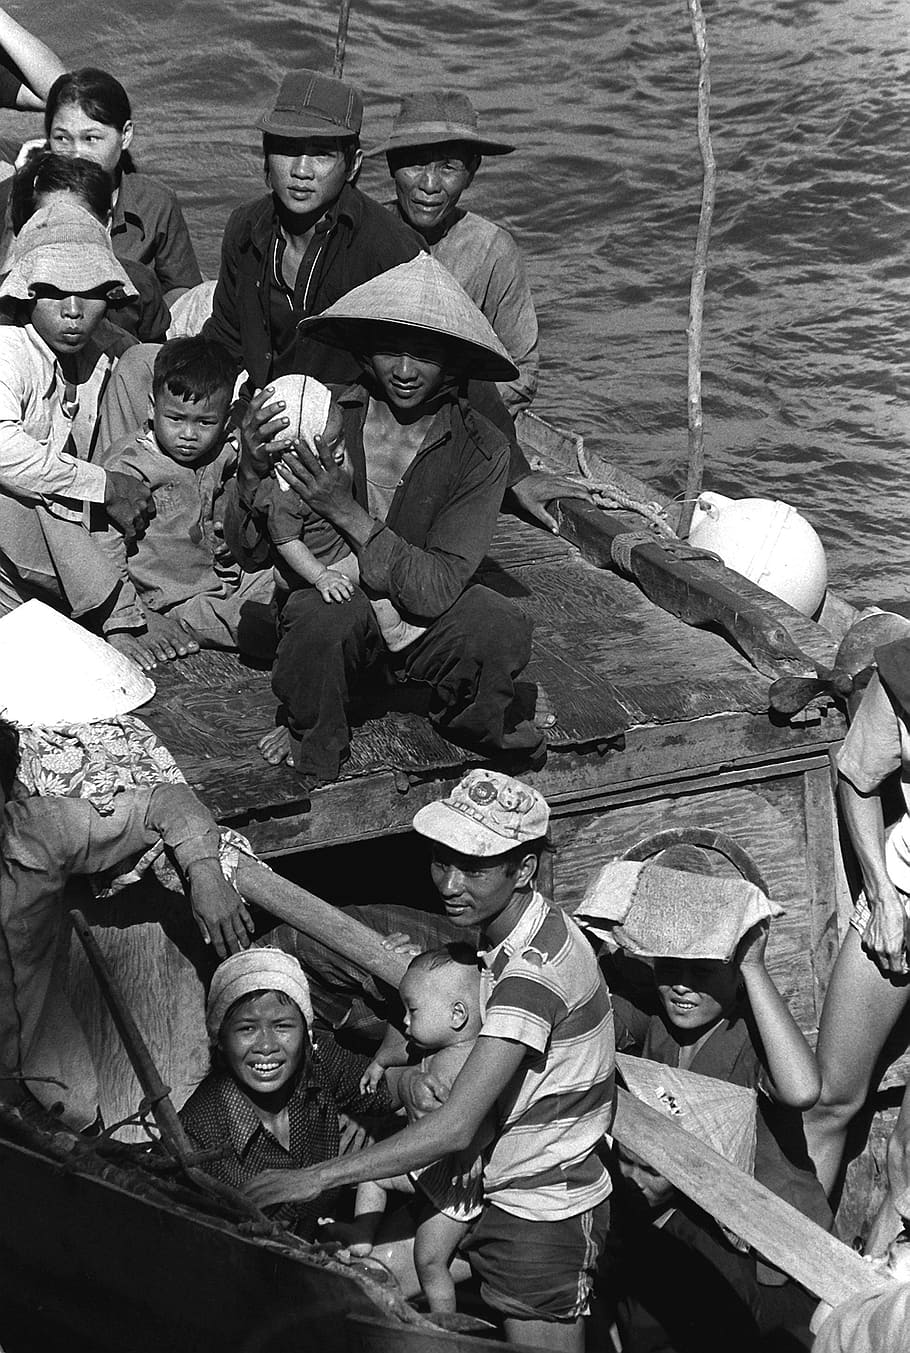 grupo, personas, equitación, bote, 35 refugiados vietnamitas, 1982, barco pesquero, ocho días en el mar, rescate, cresta azul uss